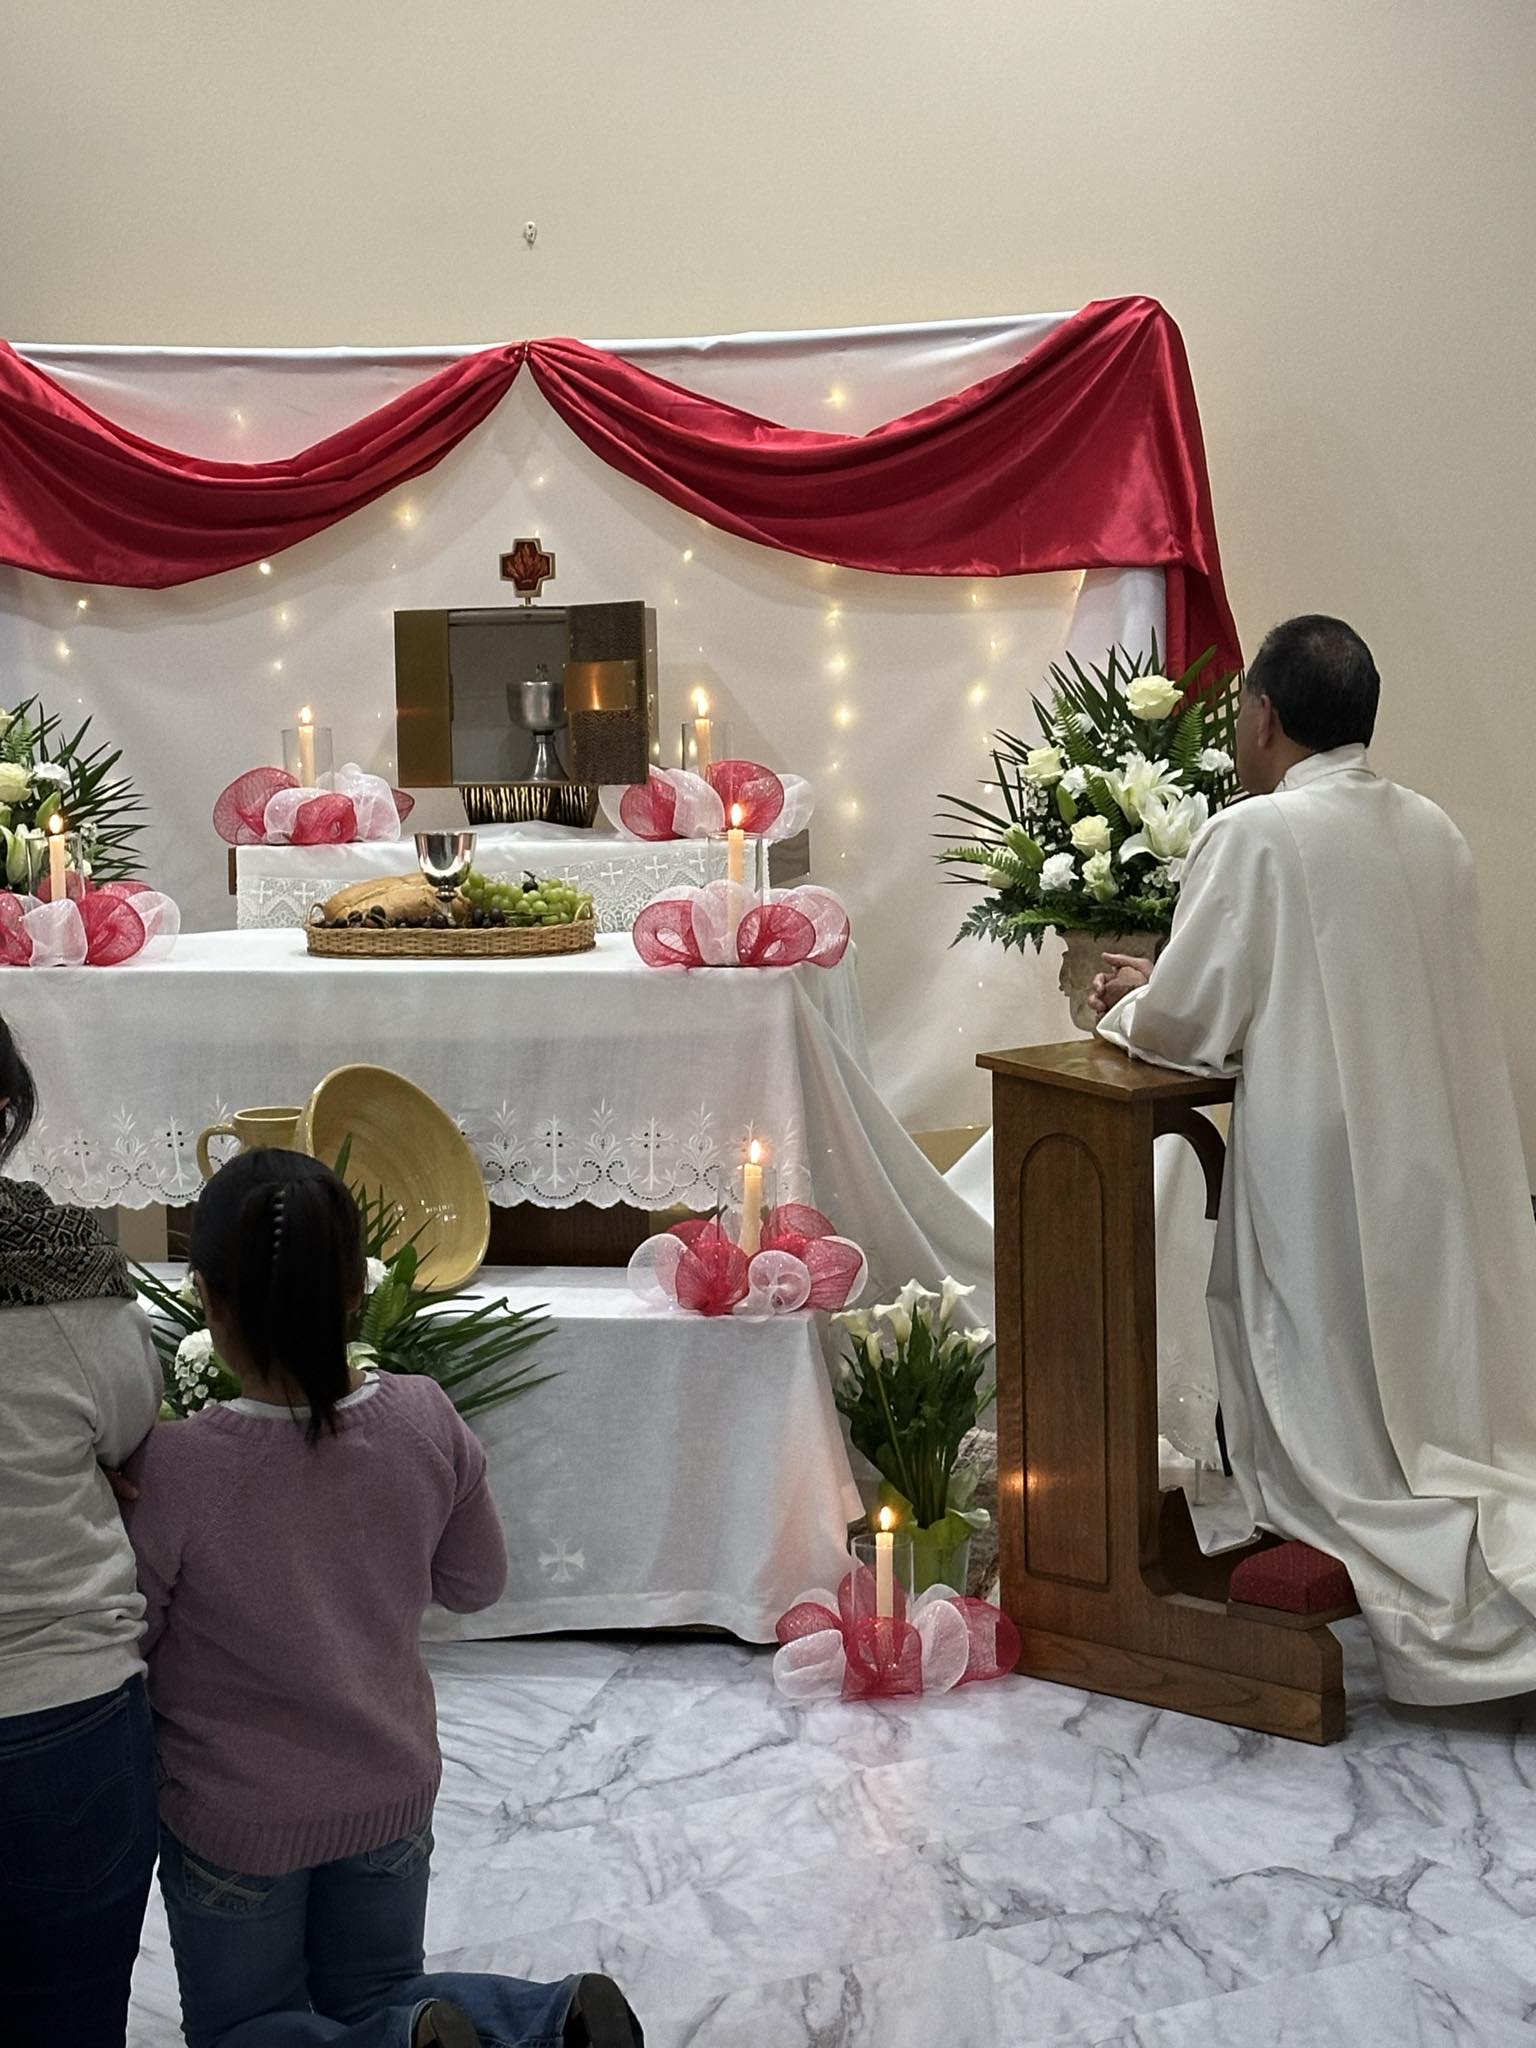 Fr. Antony in adoration